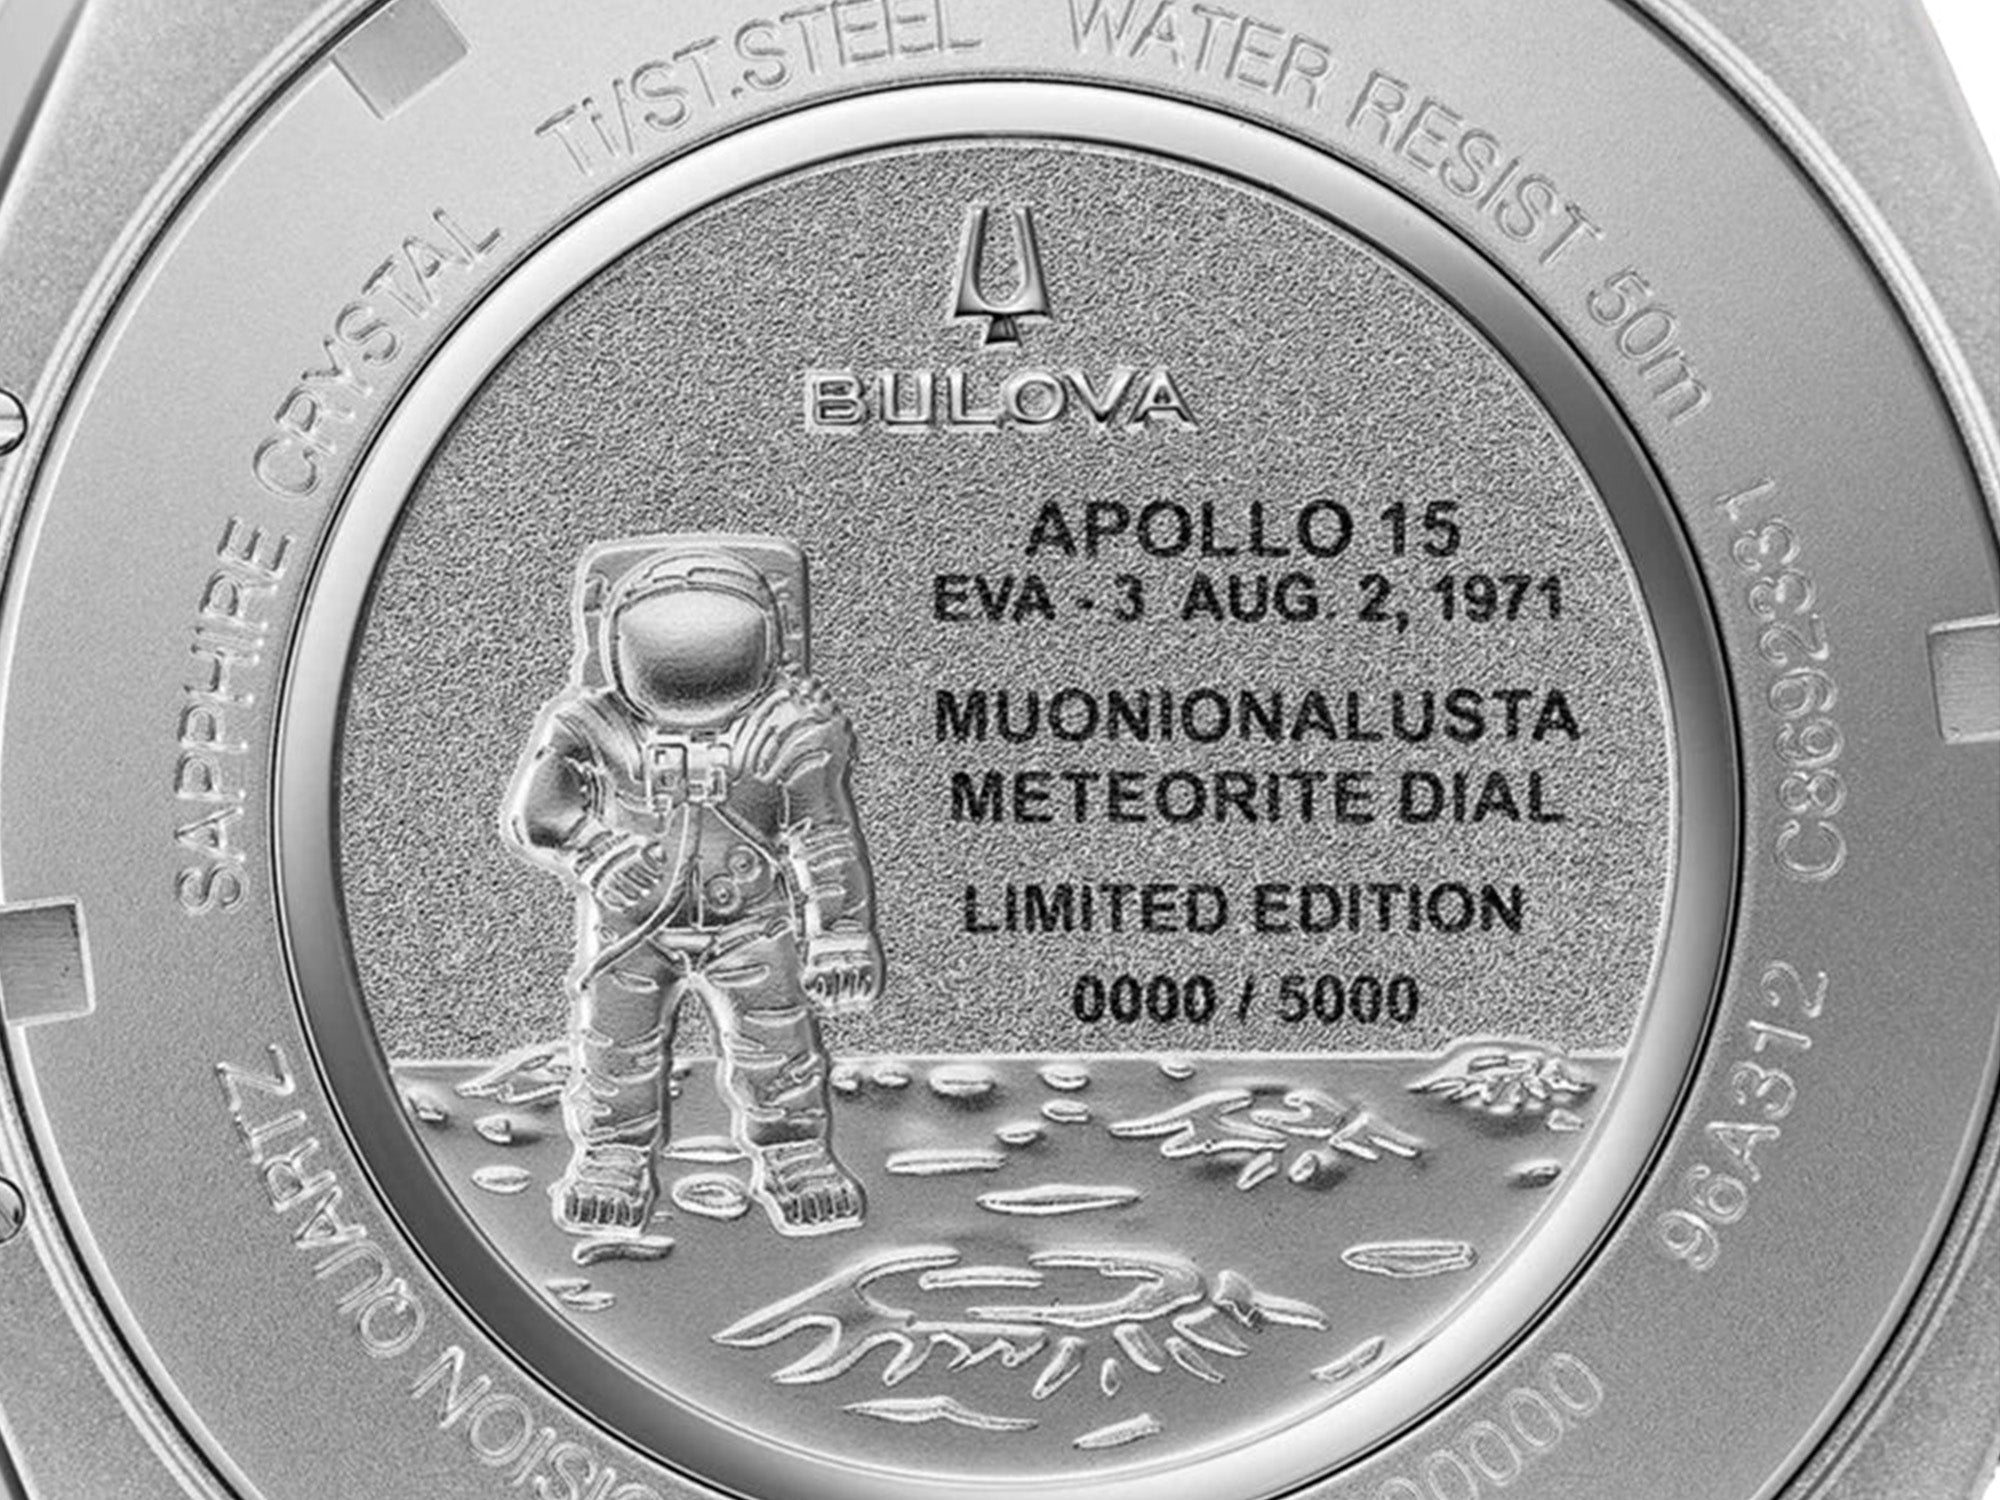 Bulova Lunar Pilot Meteorite Dial caseback